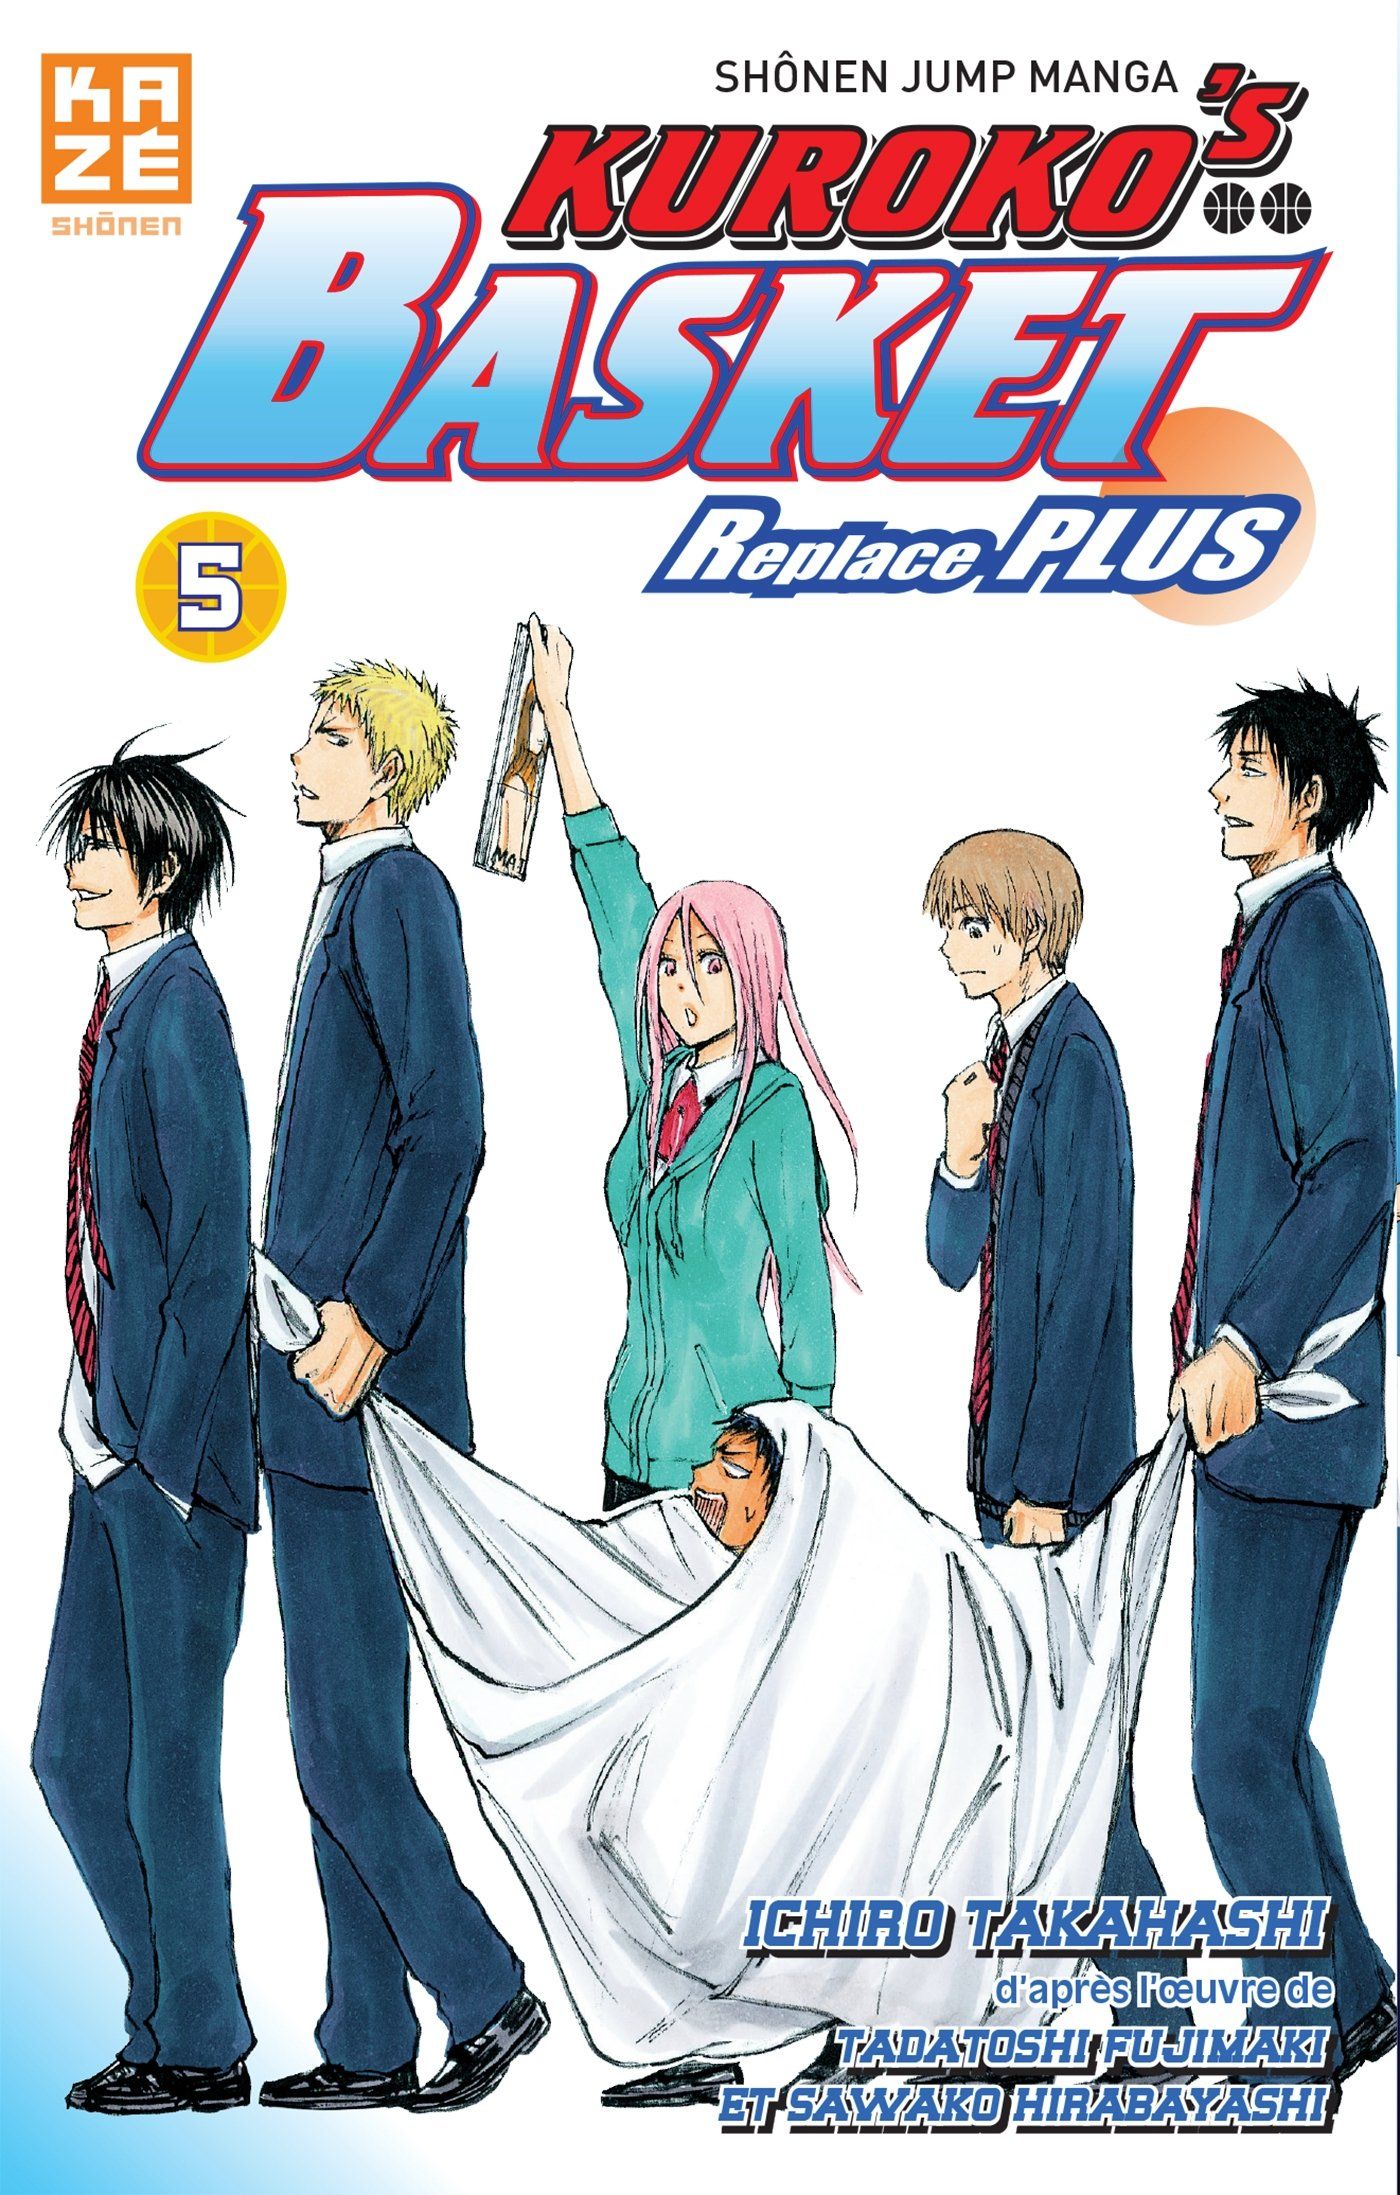 Vol5 Kurokos Basket Replace Plus Manga Manga News